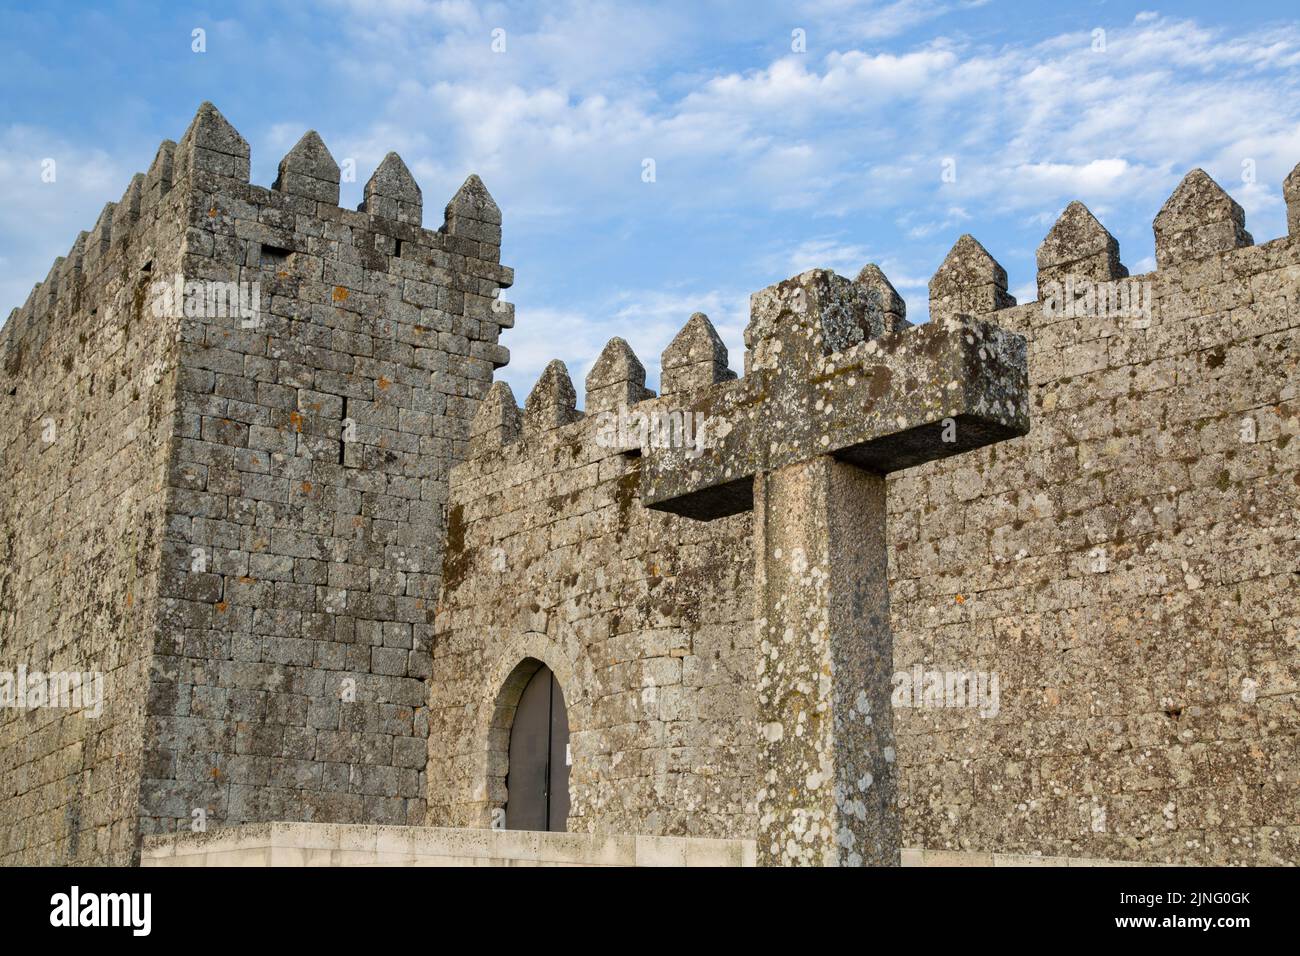 Castle Facade and Cross, Trancoso, Portugal Stock Photo